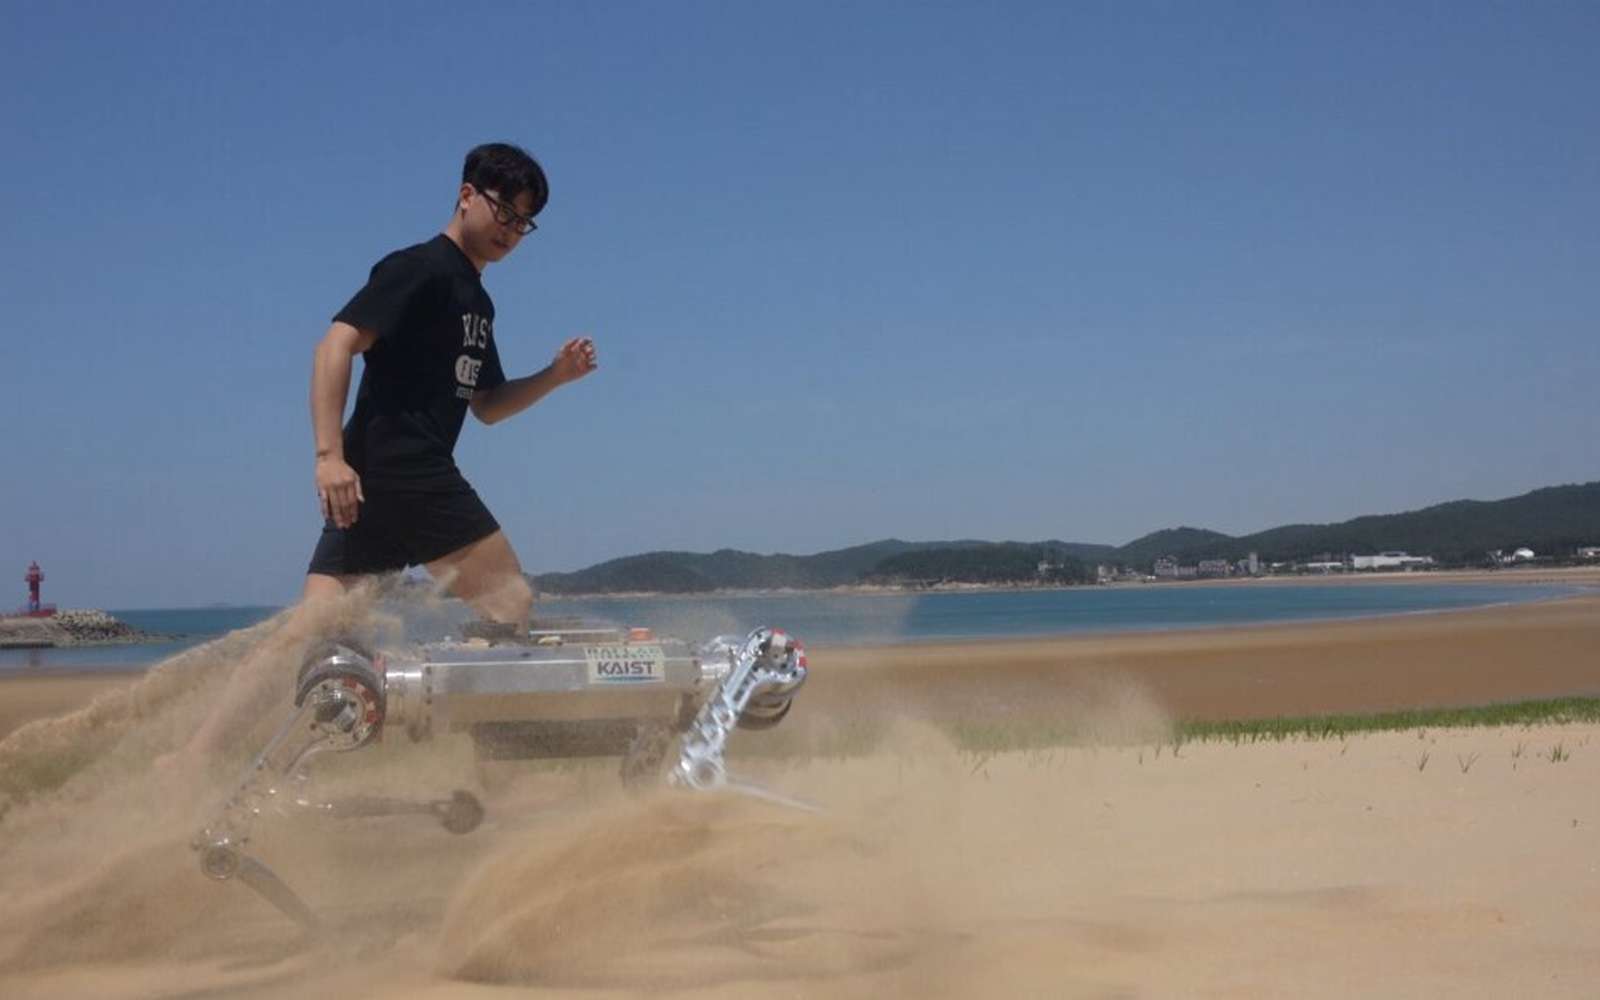 Ce robot peut courir à 11 km/h sur du sable !